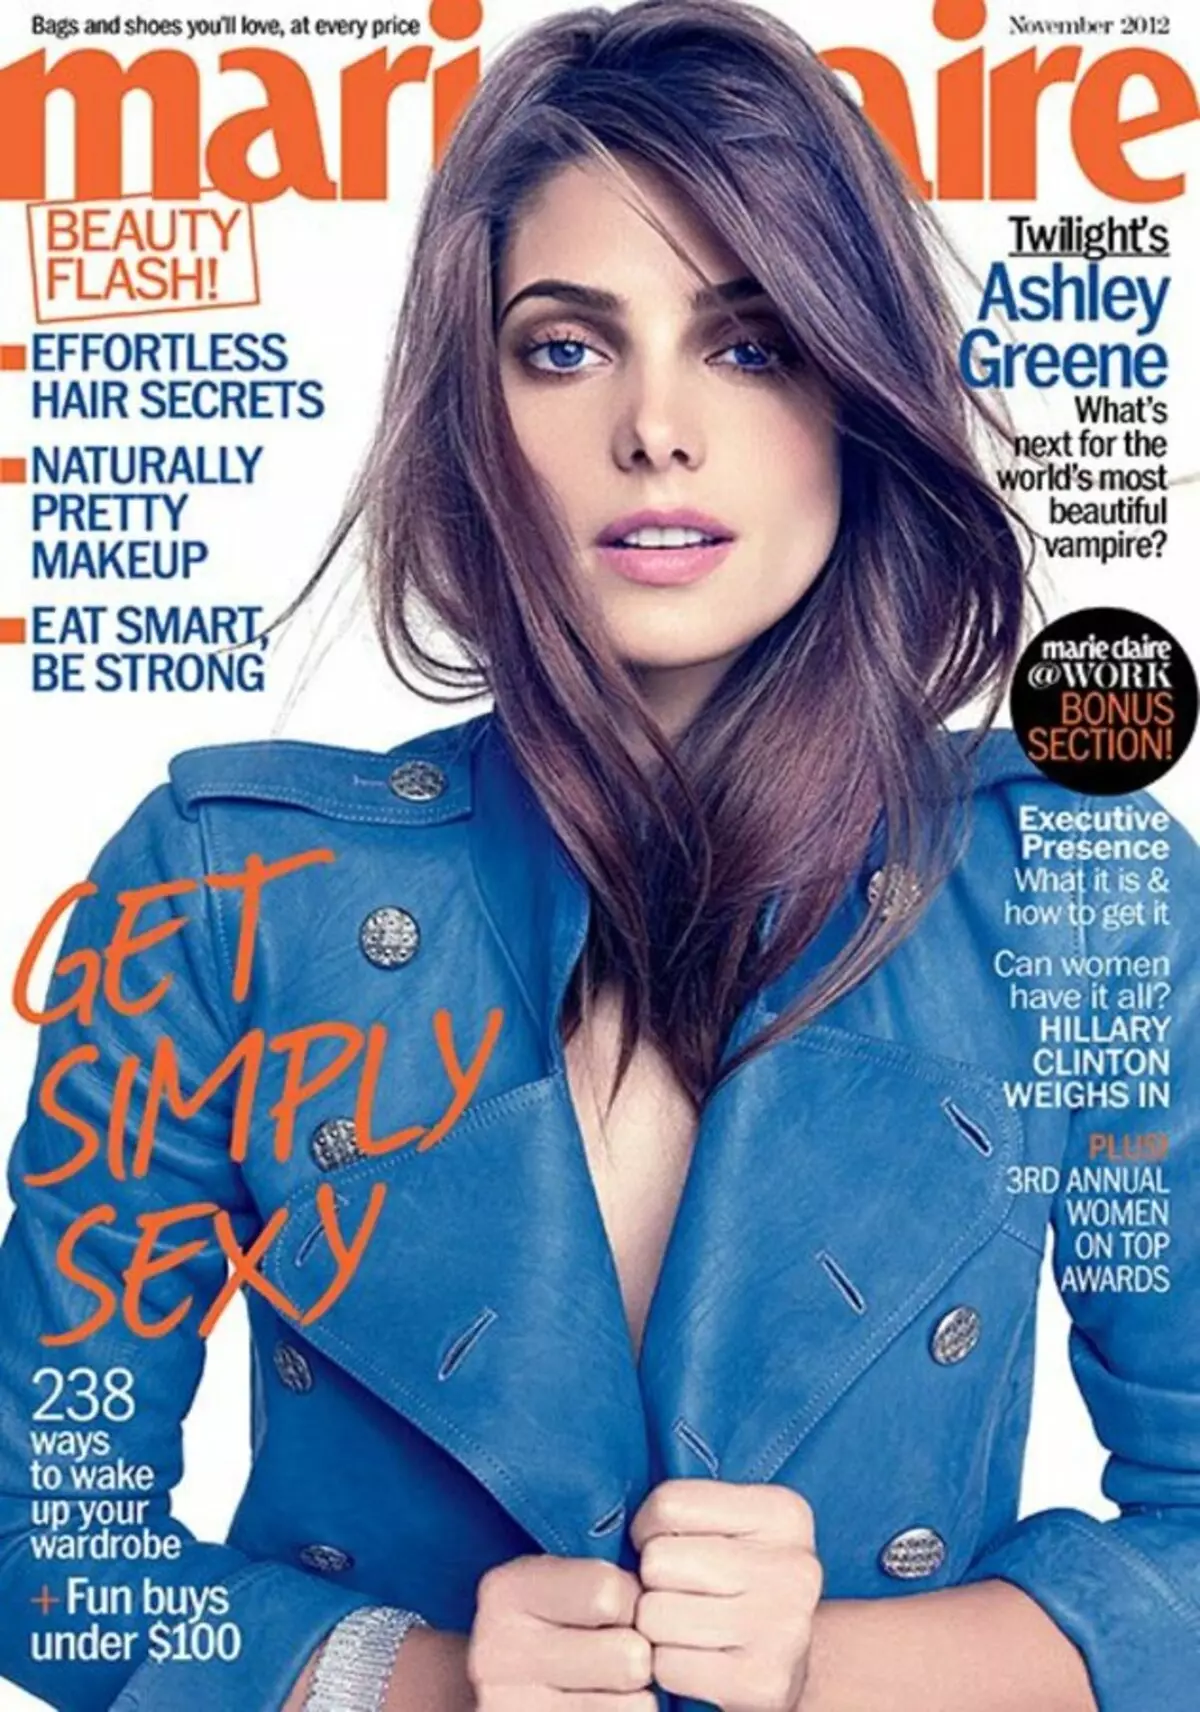 Ashley Greene në revistën Marie Claire. Nëntor 2012.